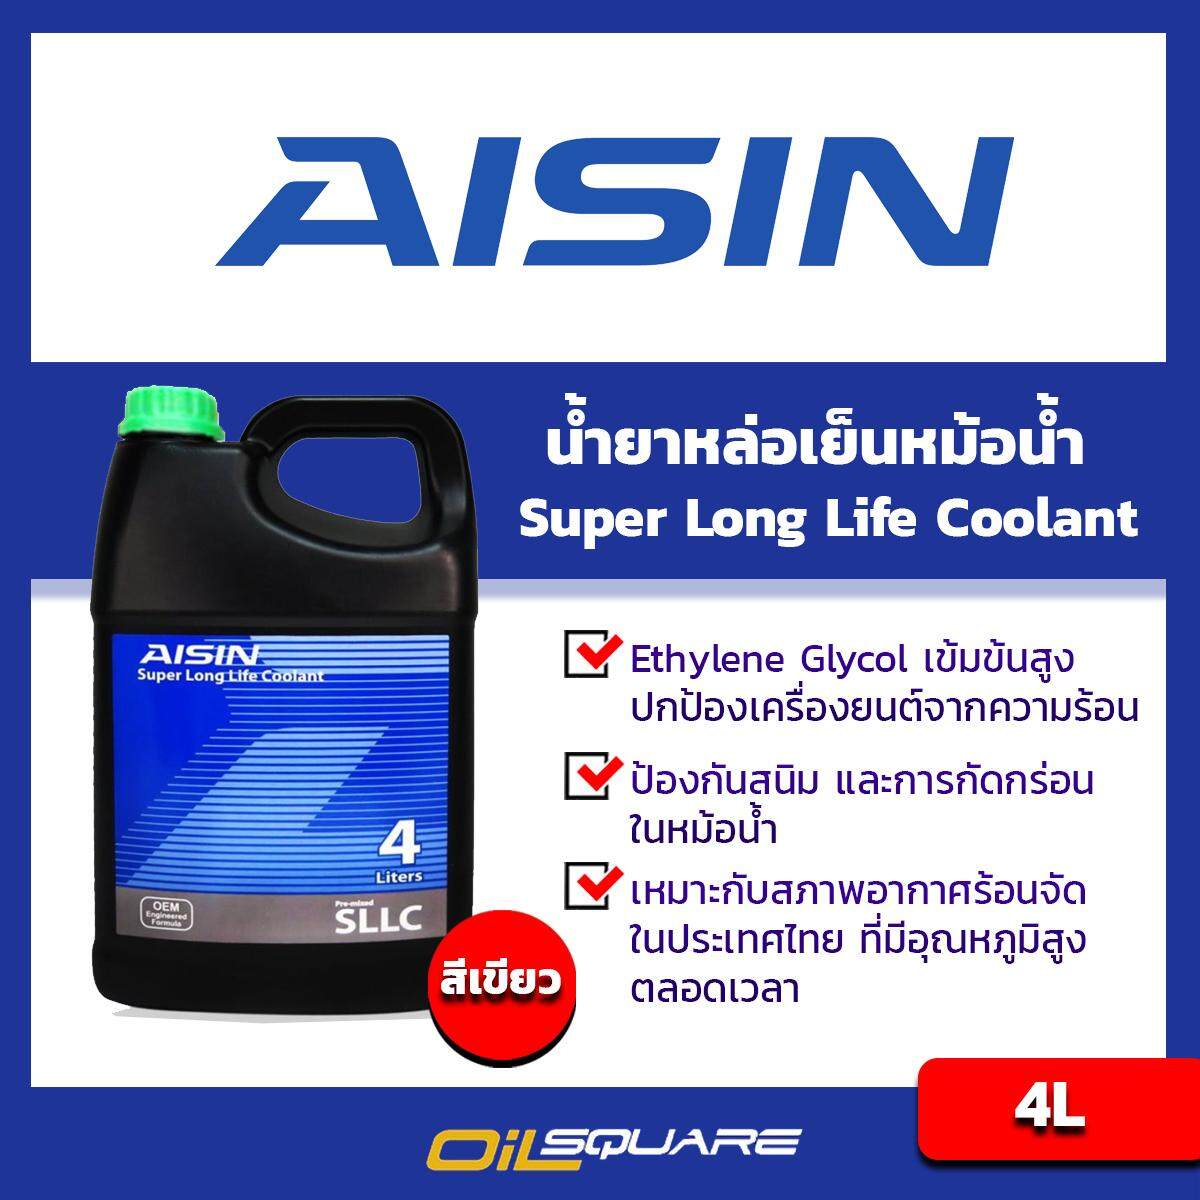 ไอซิน ซูเปอร์ ลองไลฟ์ คูลแลนท์ AISIN Super Longlife Coolant ขนาด 4 ลิตร น้ำสีเขียว l สำหรับรถยนต์ทุกรุ่น [ออยสแควร์-Oilsquare]